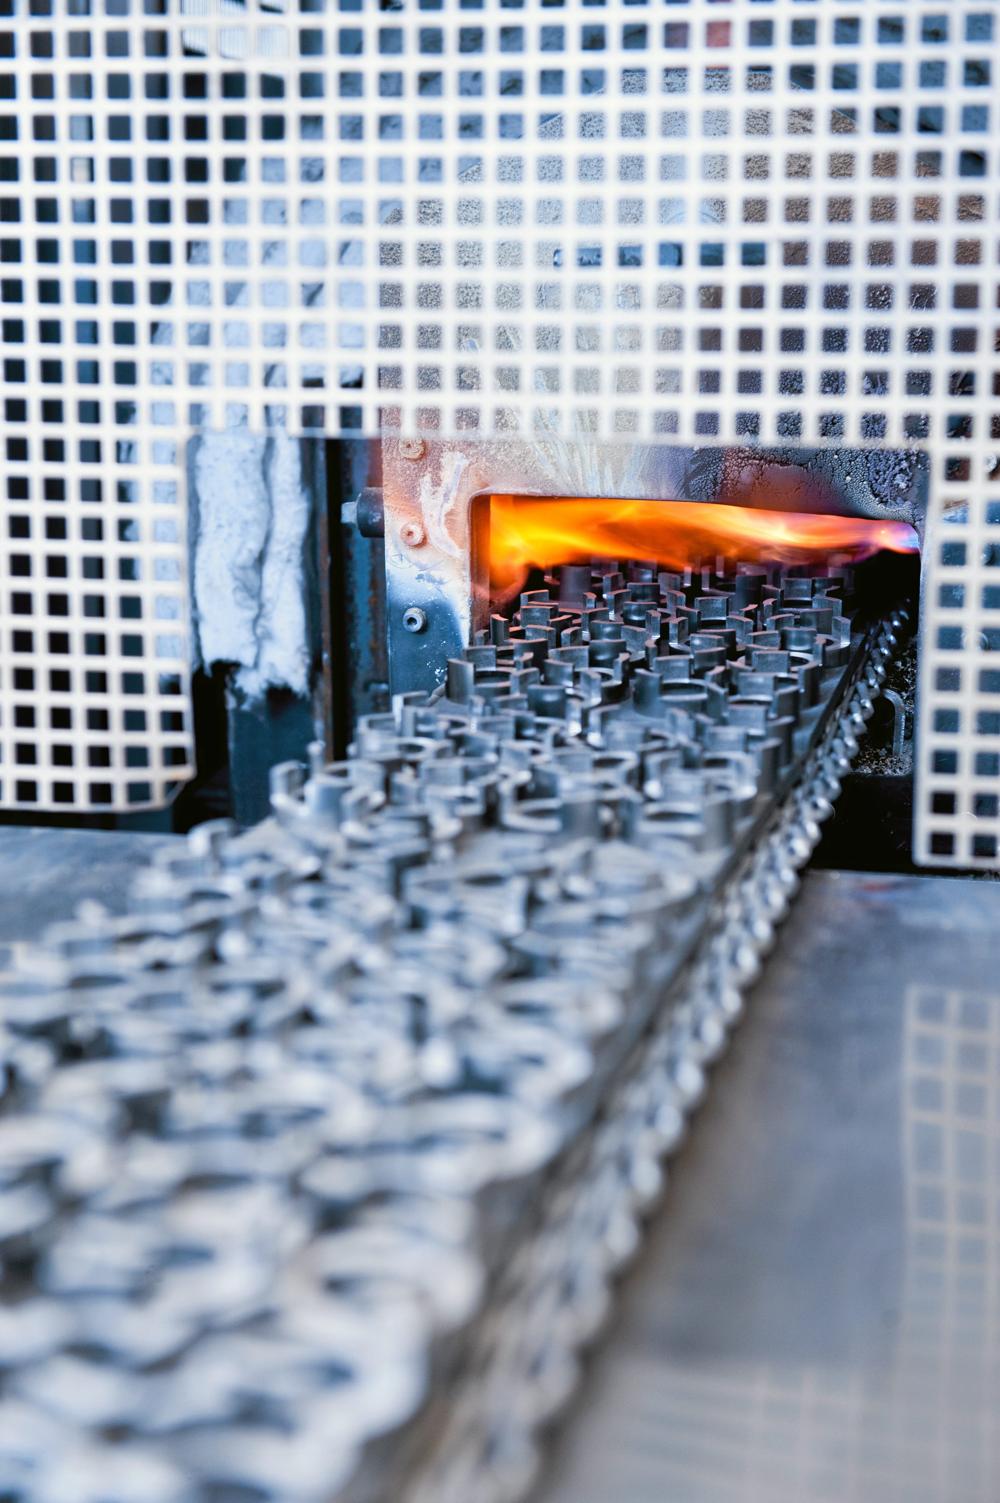 Sintex arbejder med pulvermetal i overvejende rustfrit stål, som via presning og sintring kan formgives i komplekse geometrier i stort styktal. Produktionsmetoden kombineret med viden om metallerne, giver Hobro-virksomheden store muligheder for en plads som underleverandør i den grønne omstilling.